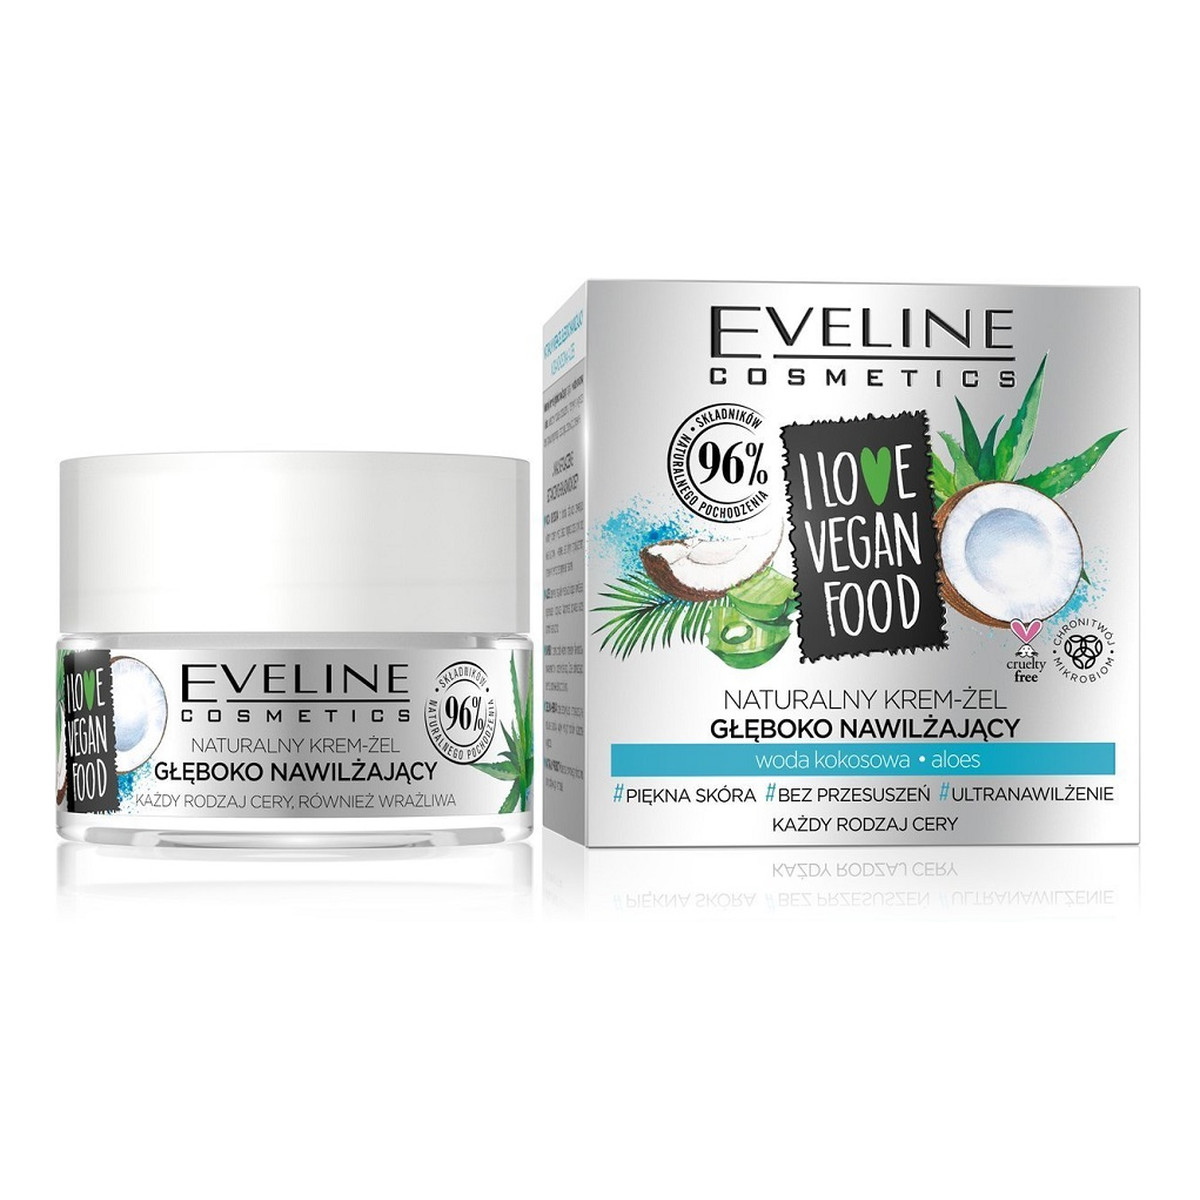 Eveline I Love Vegan Food Naturalny Krem-Żel Głęboko Nawilżający Woda Kokosowa & Aloes 50ml